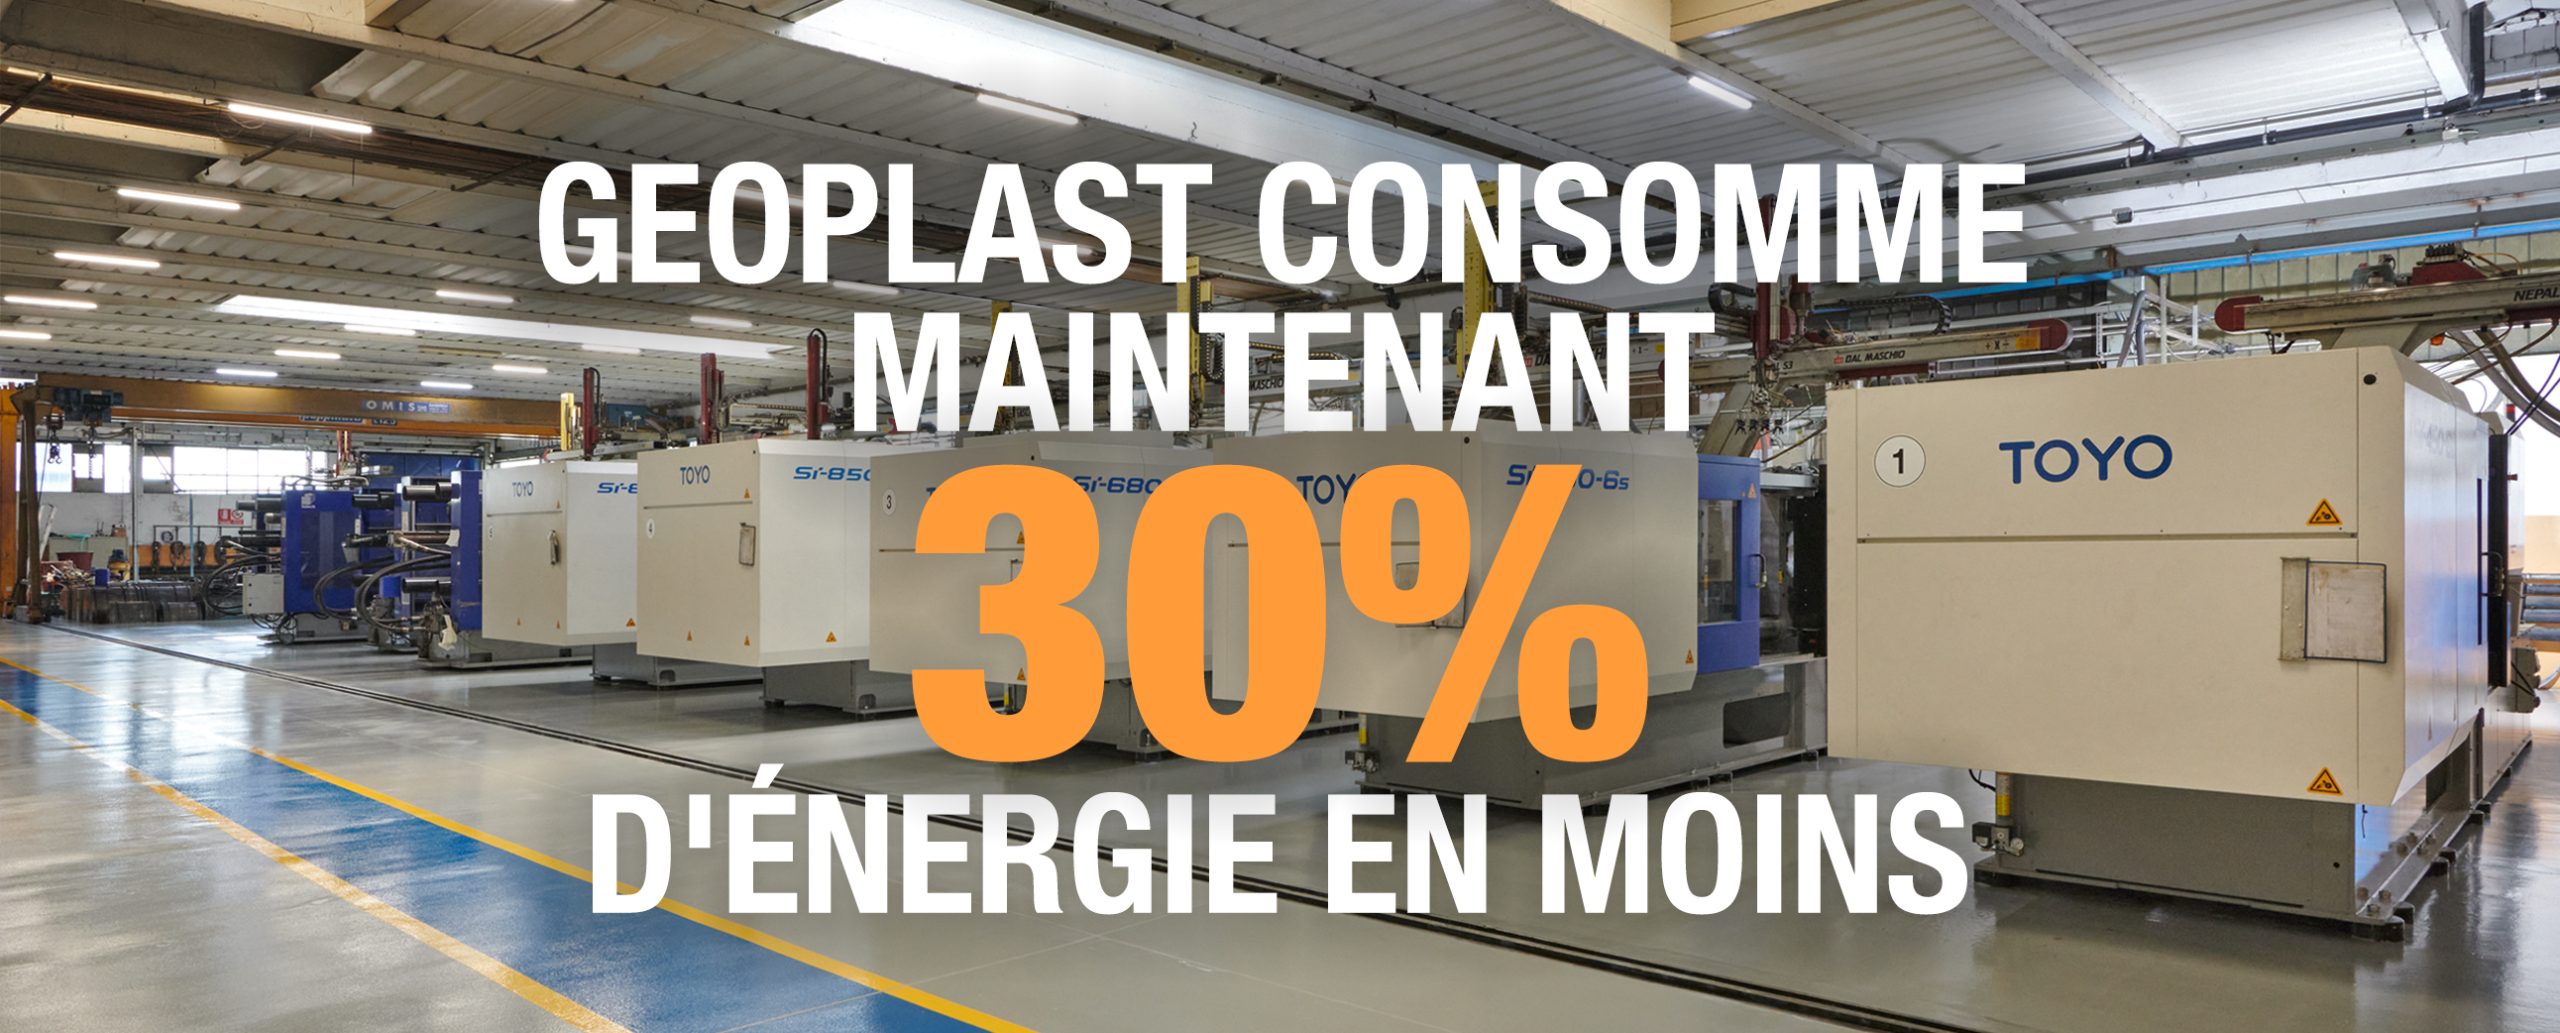 La fabrication de Geoplast réduit les besoins énergétiques de 30 % grâce à des machines entièrement électriques